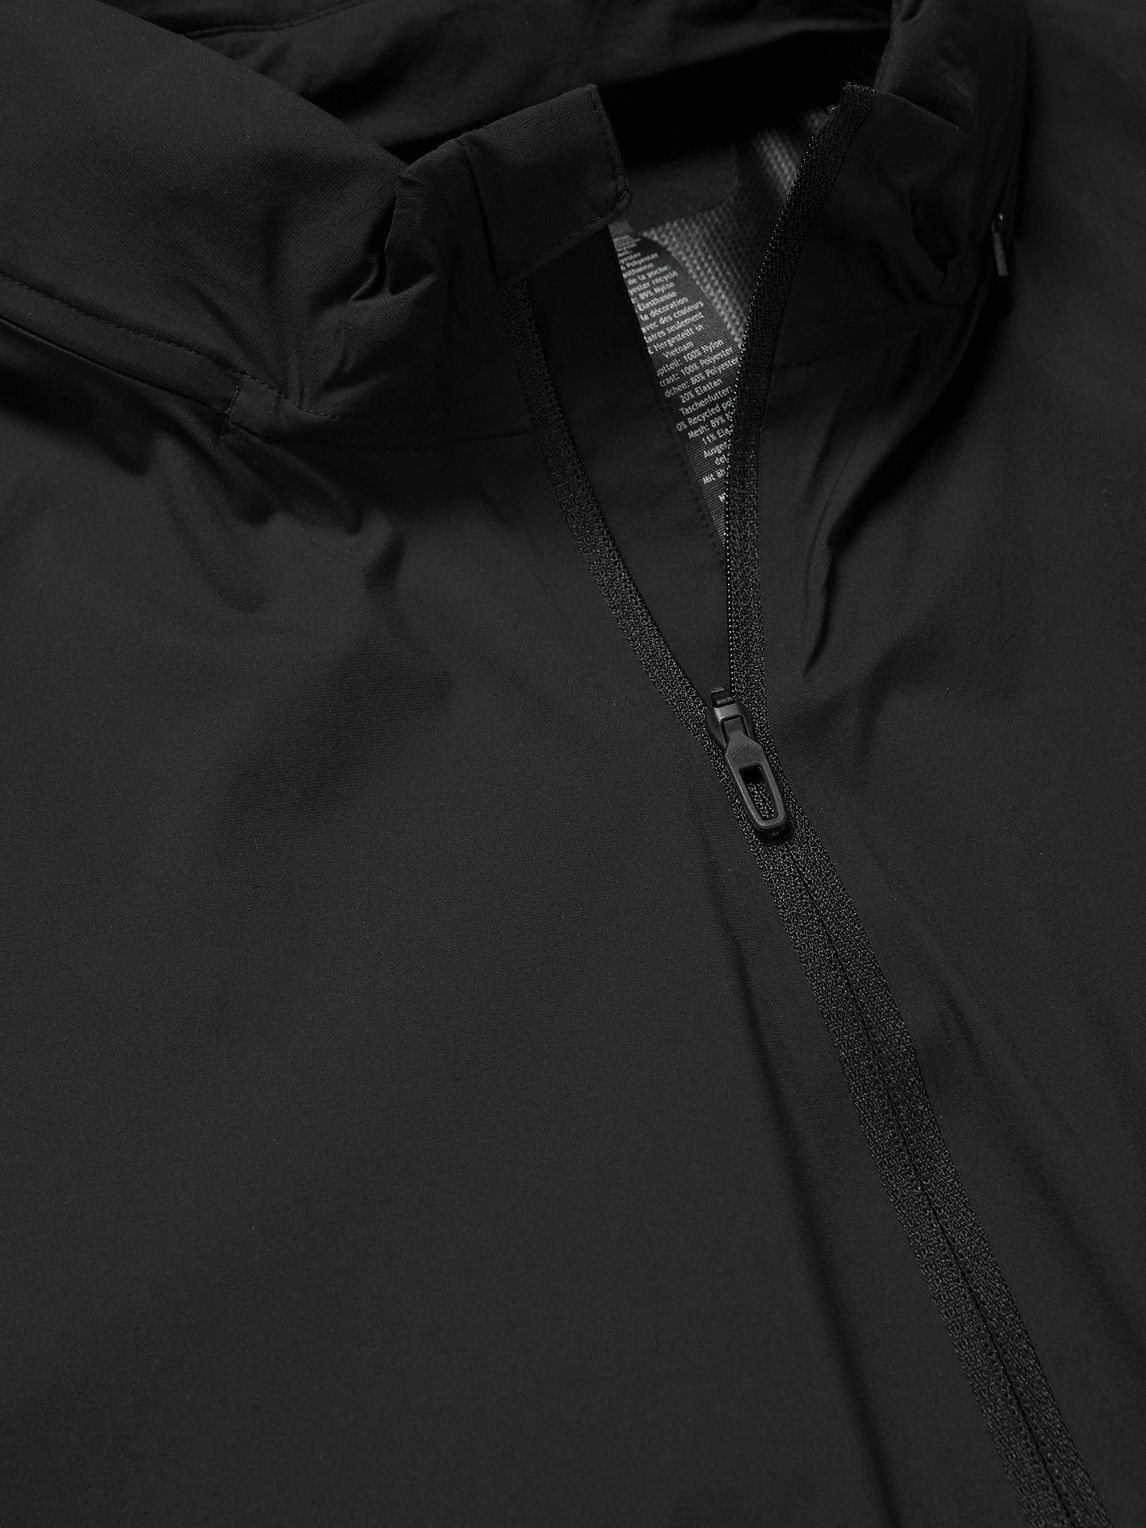 LULULEMON Cross Chill RepelShell™ hooded jacket